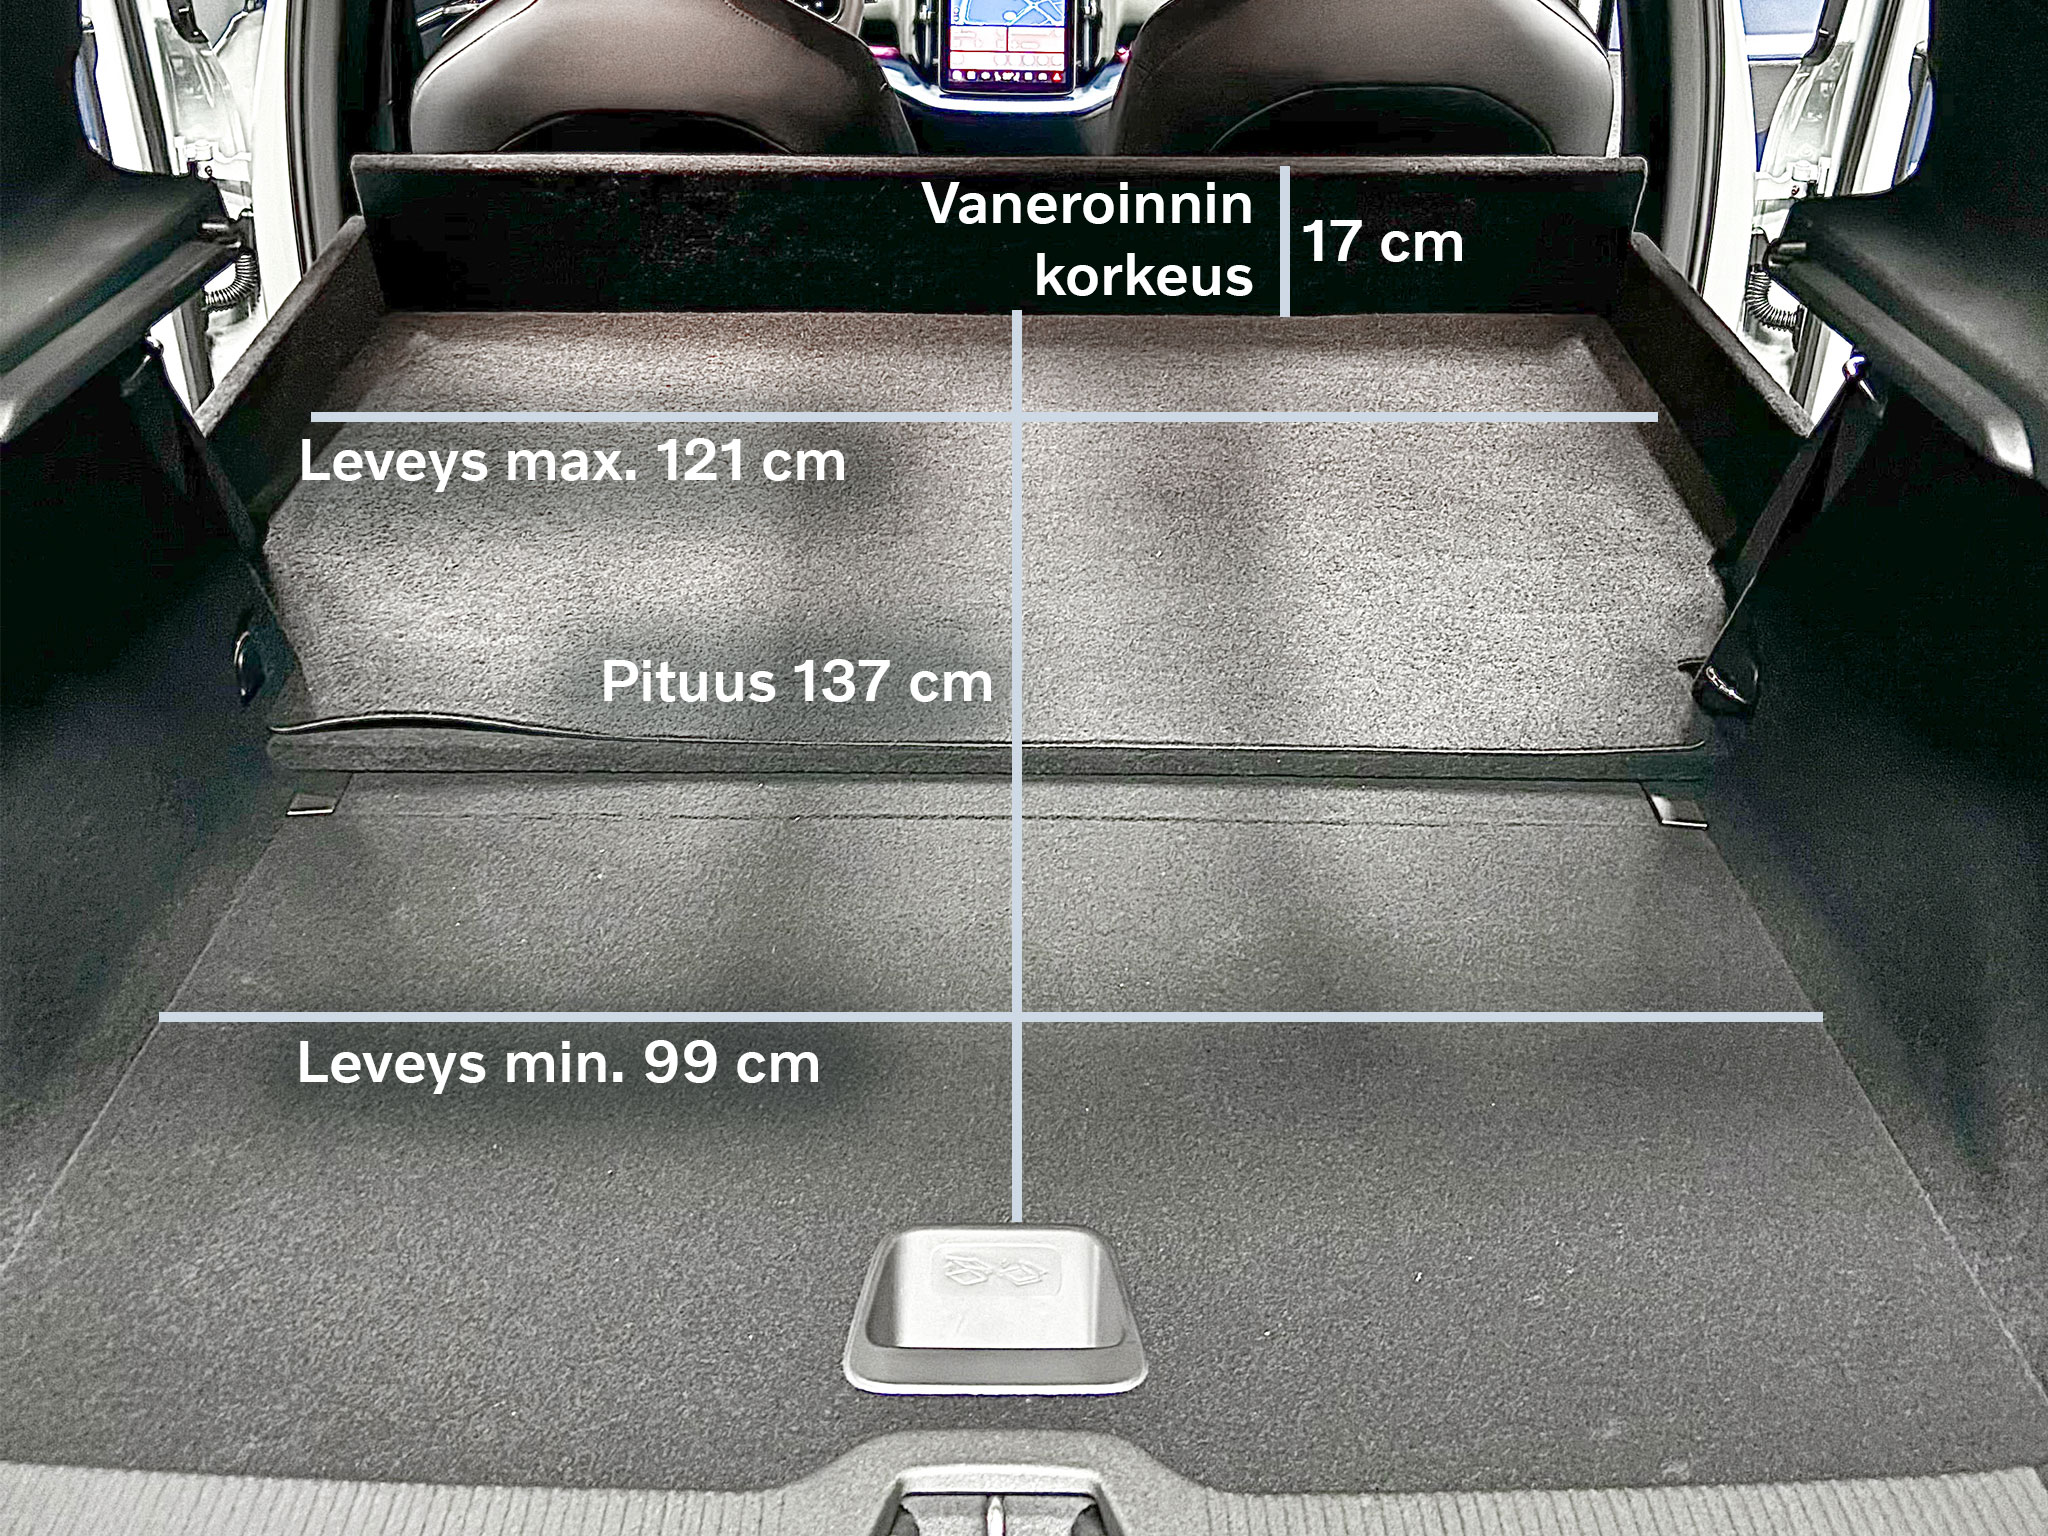 Volvo EX30 pakettiauton takatila, johon on merkitty takatilan mitat: Leveys min. 99 cm, max. 121cm. Pituus 137 cm. Vaneroinnin korkeus 17 cm.